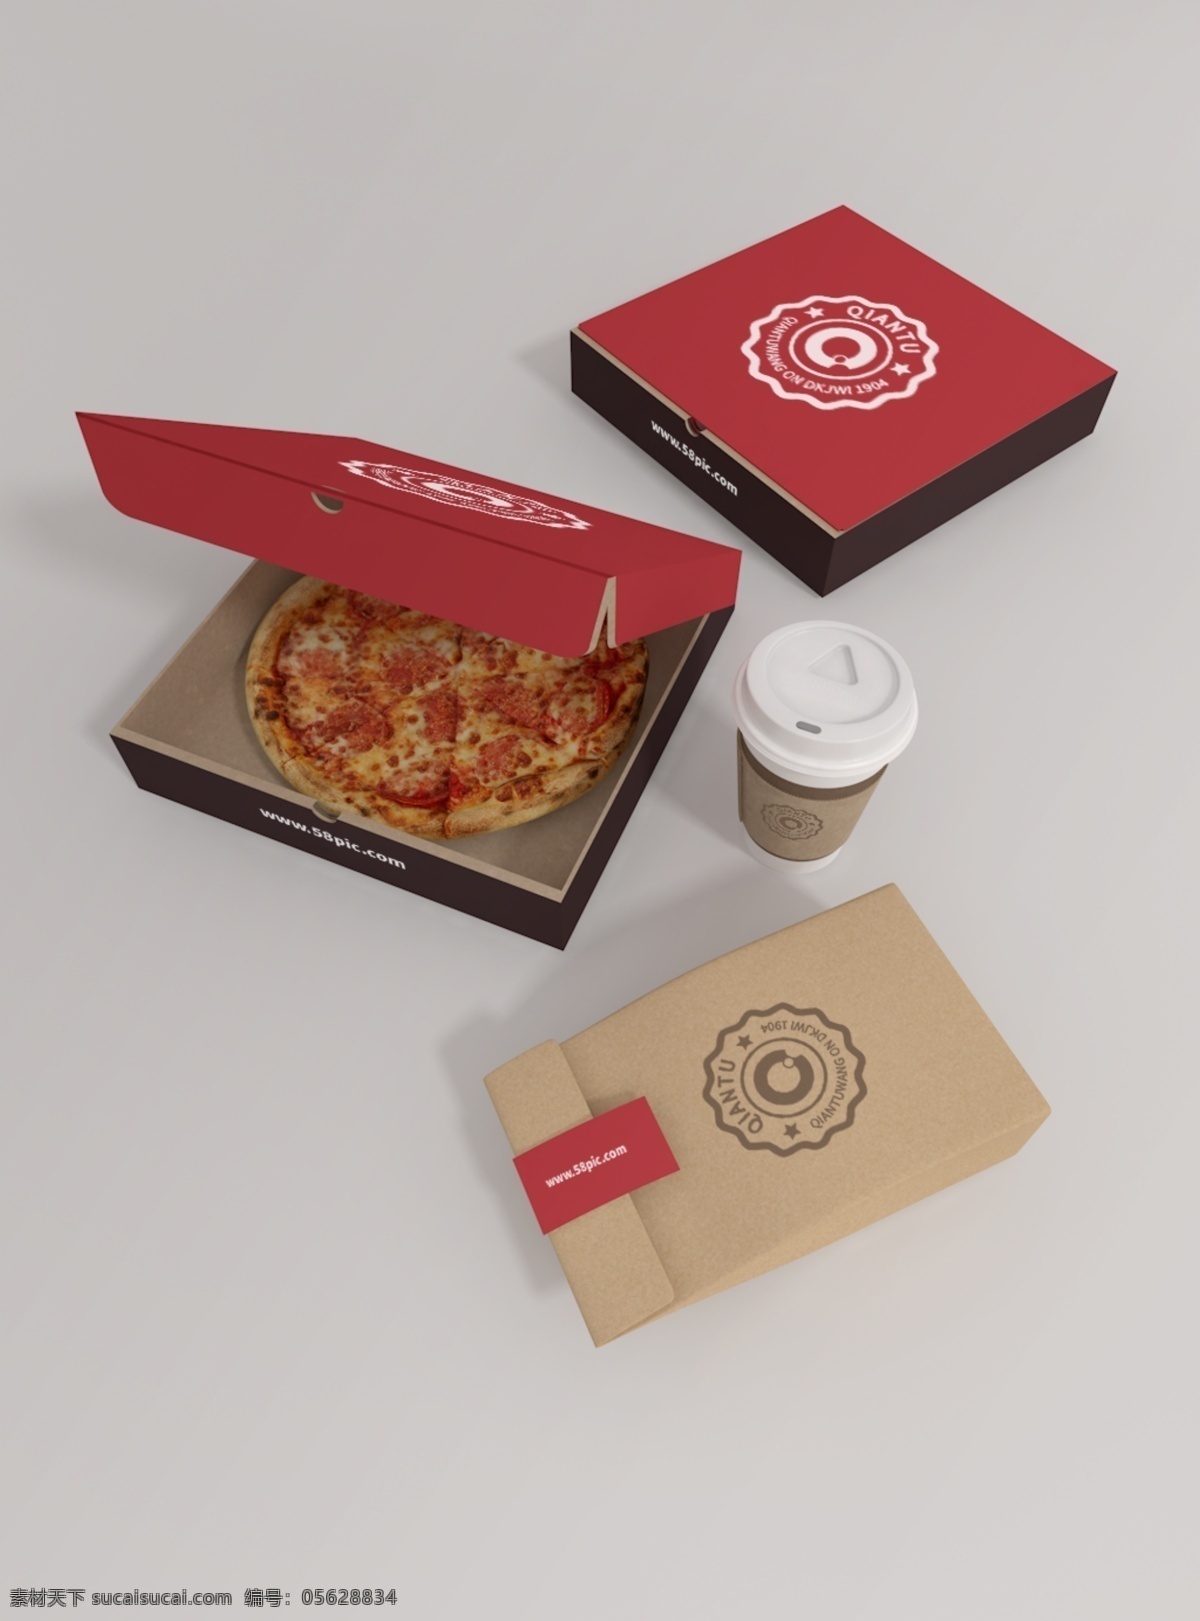 原创 模型 披萨 盒子 样机 打包 组合 套装 mockup 智能图层 一键贴图 袋子 方盒子 杯子 餐饮店 快餐盒子 包装样机